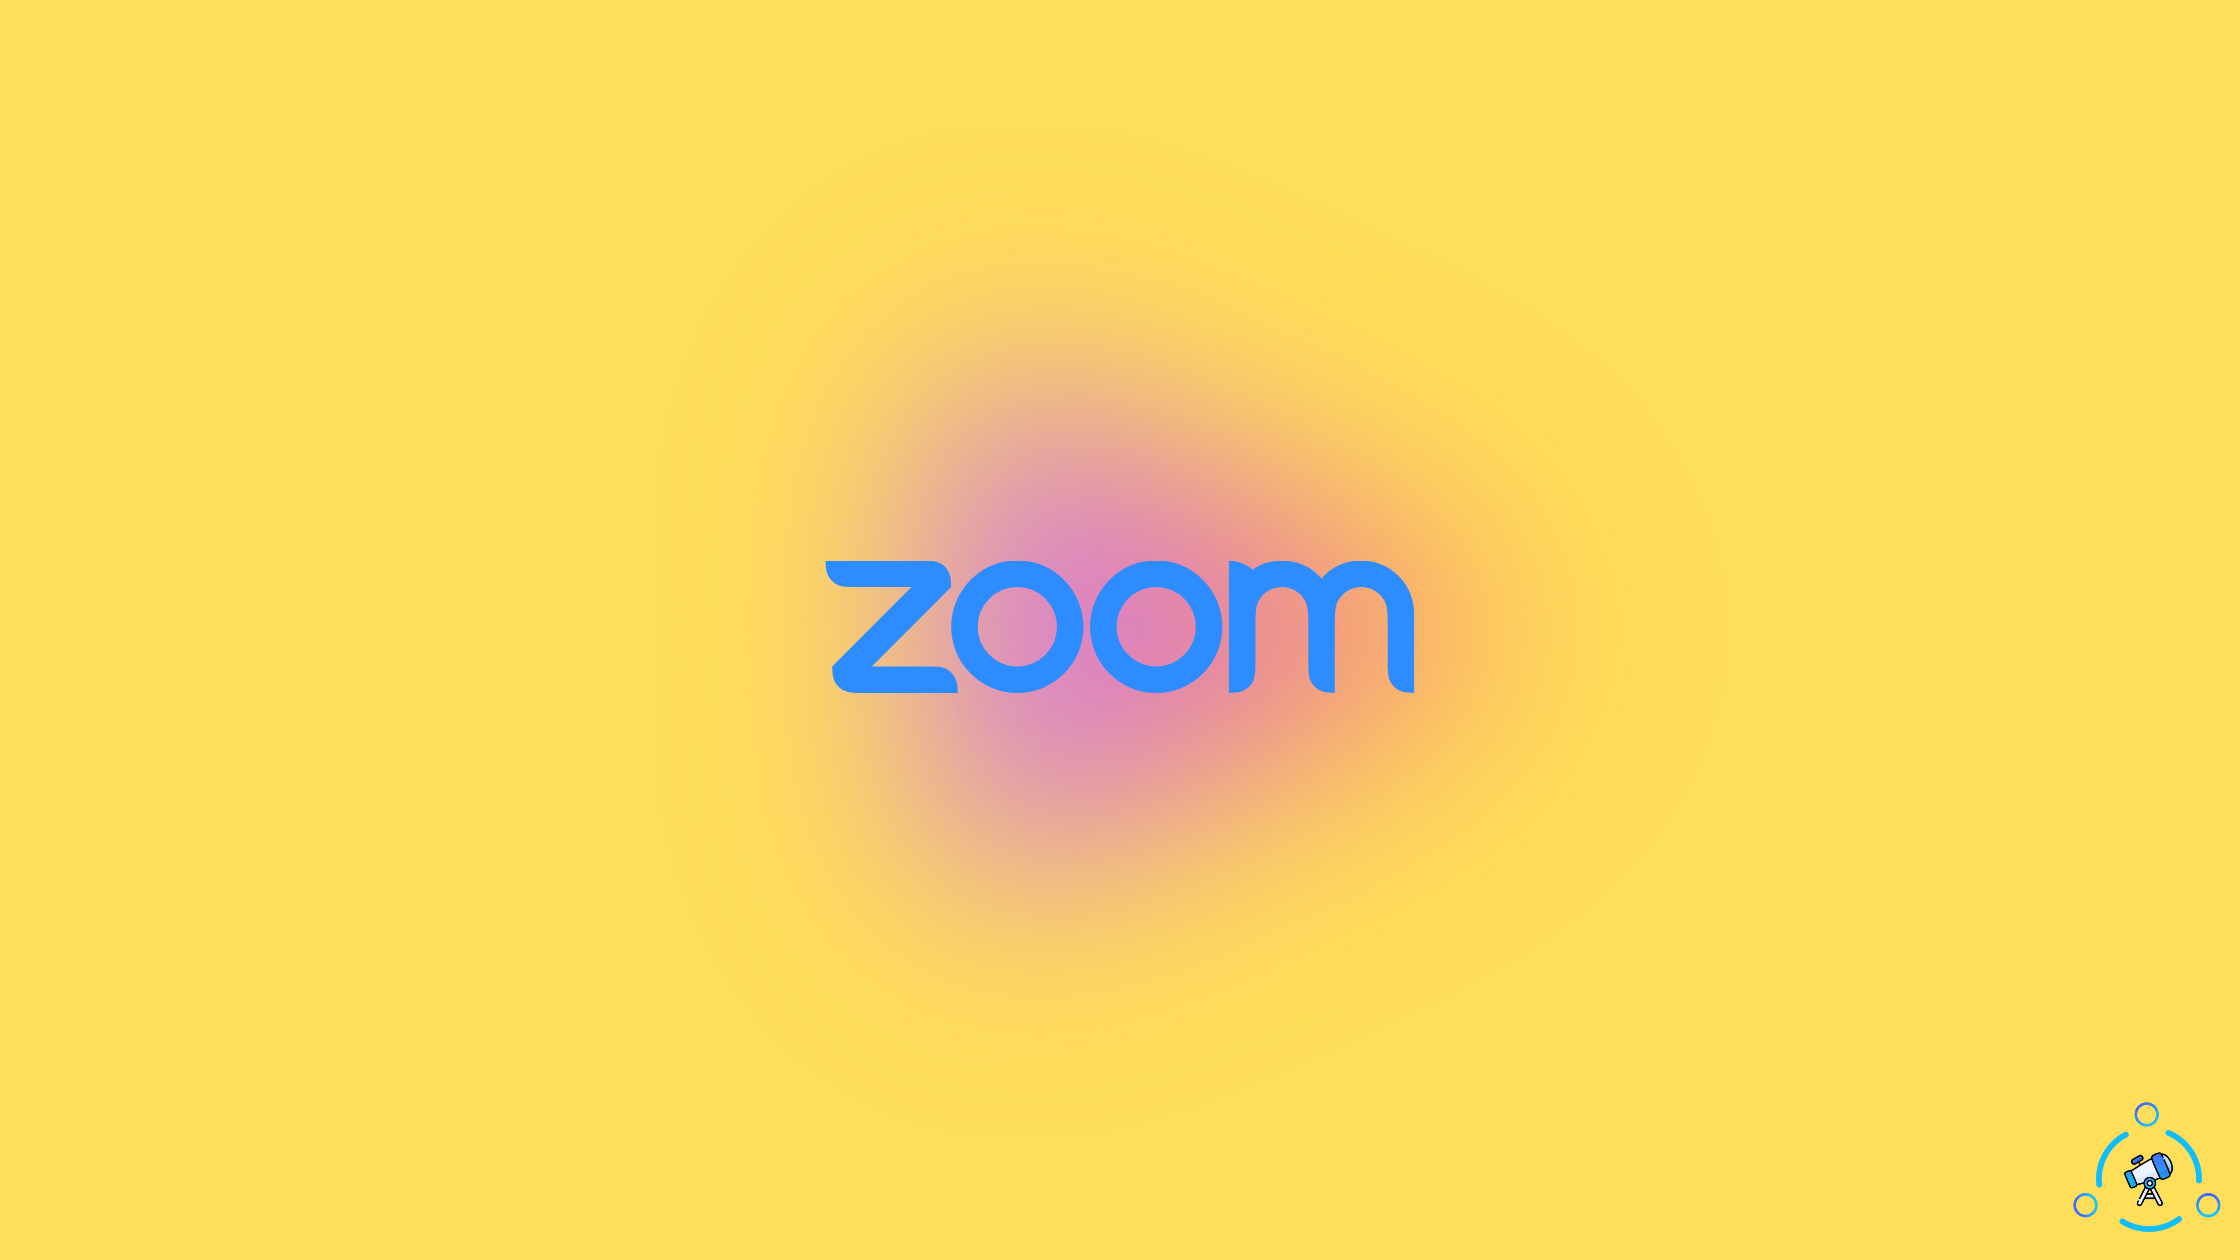 Làm mờ nền ảnh Zoom là một tính năng trợ giúp quan trọng cho mọi người trong thời gian làm việc ở nhà. Với những hình ảnh được cung cấp, bạn sẽ biết được cách làm mờ nền ảnh hiệu quả và đẹp mắt nhất. Hãy cùng xem hình ảnh để học cách làm rõ hơn nhé!